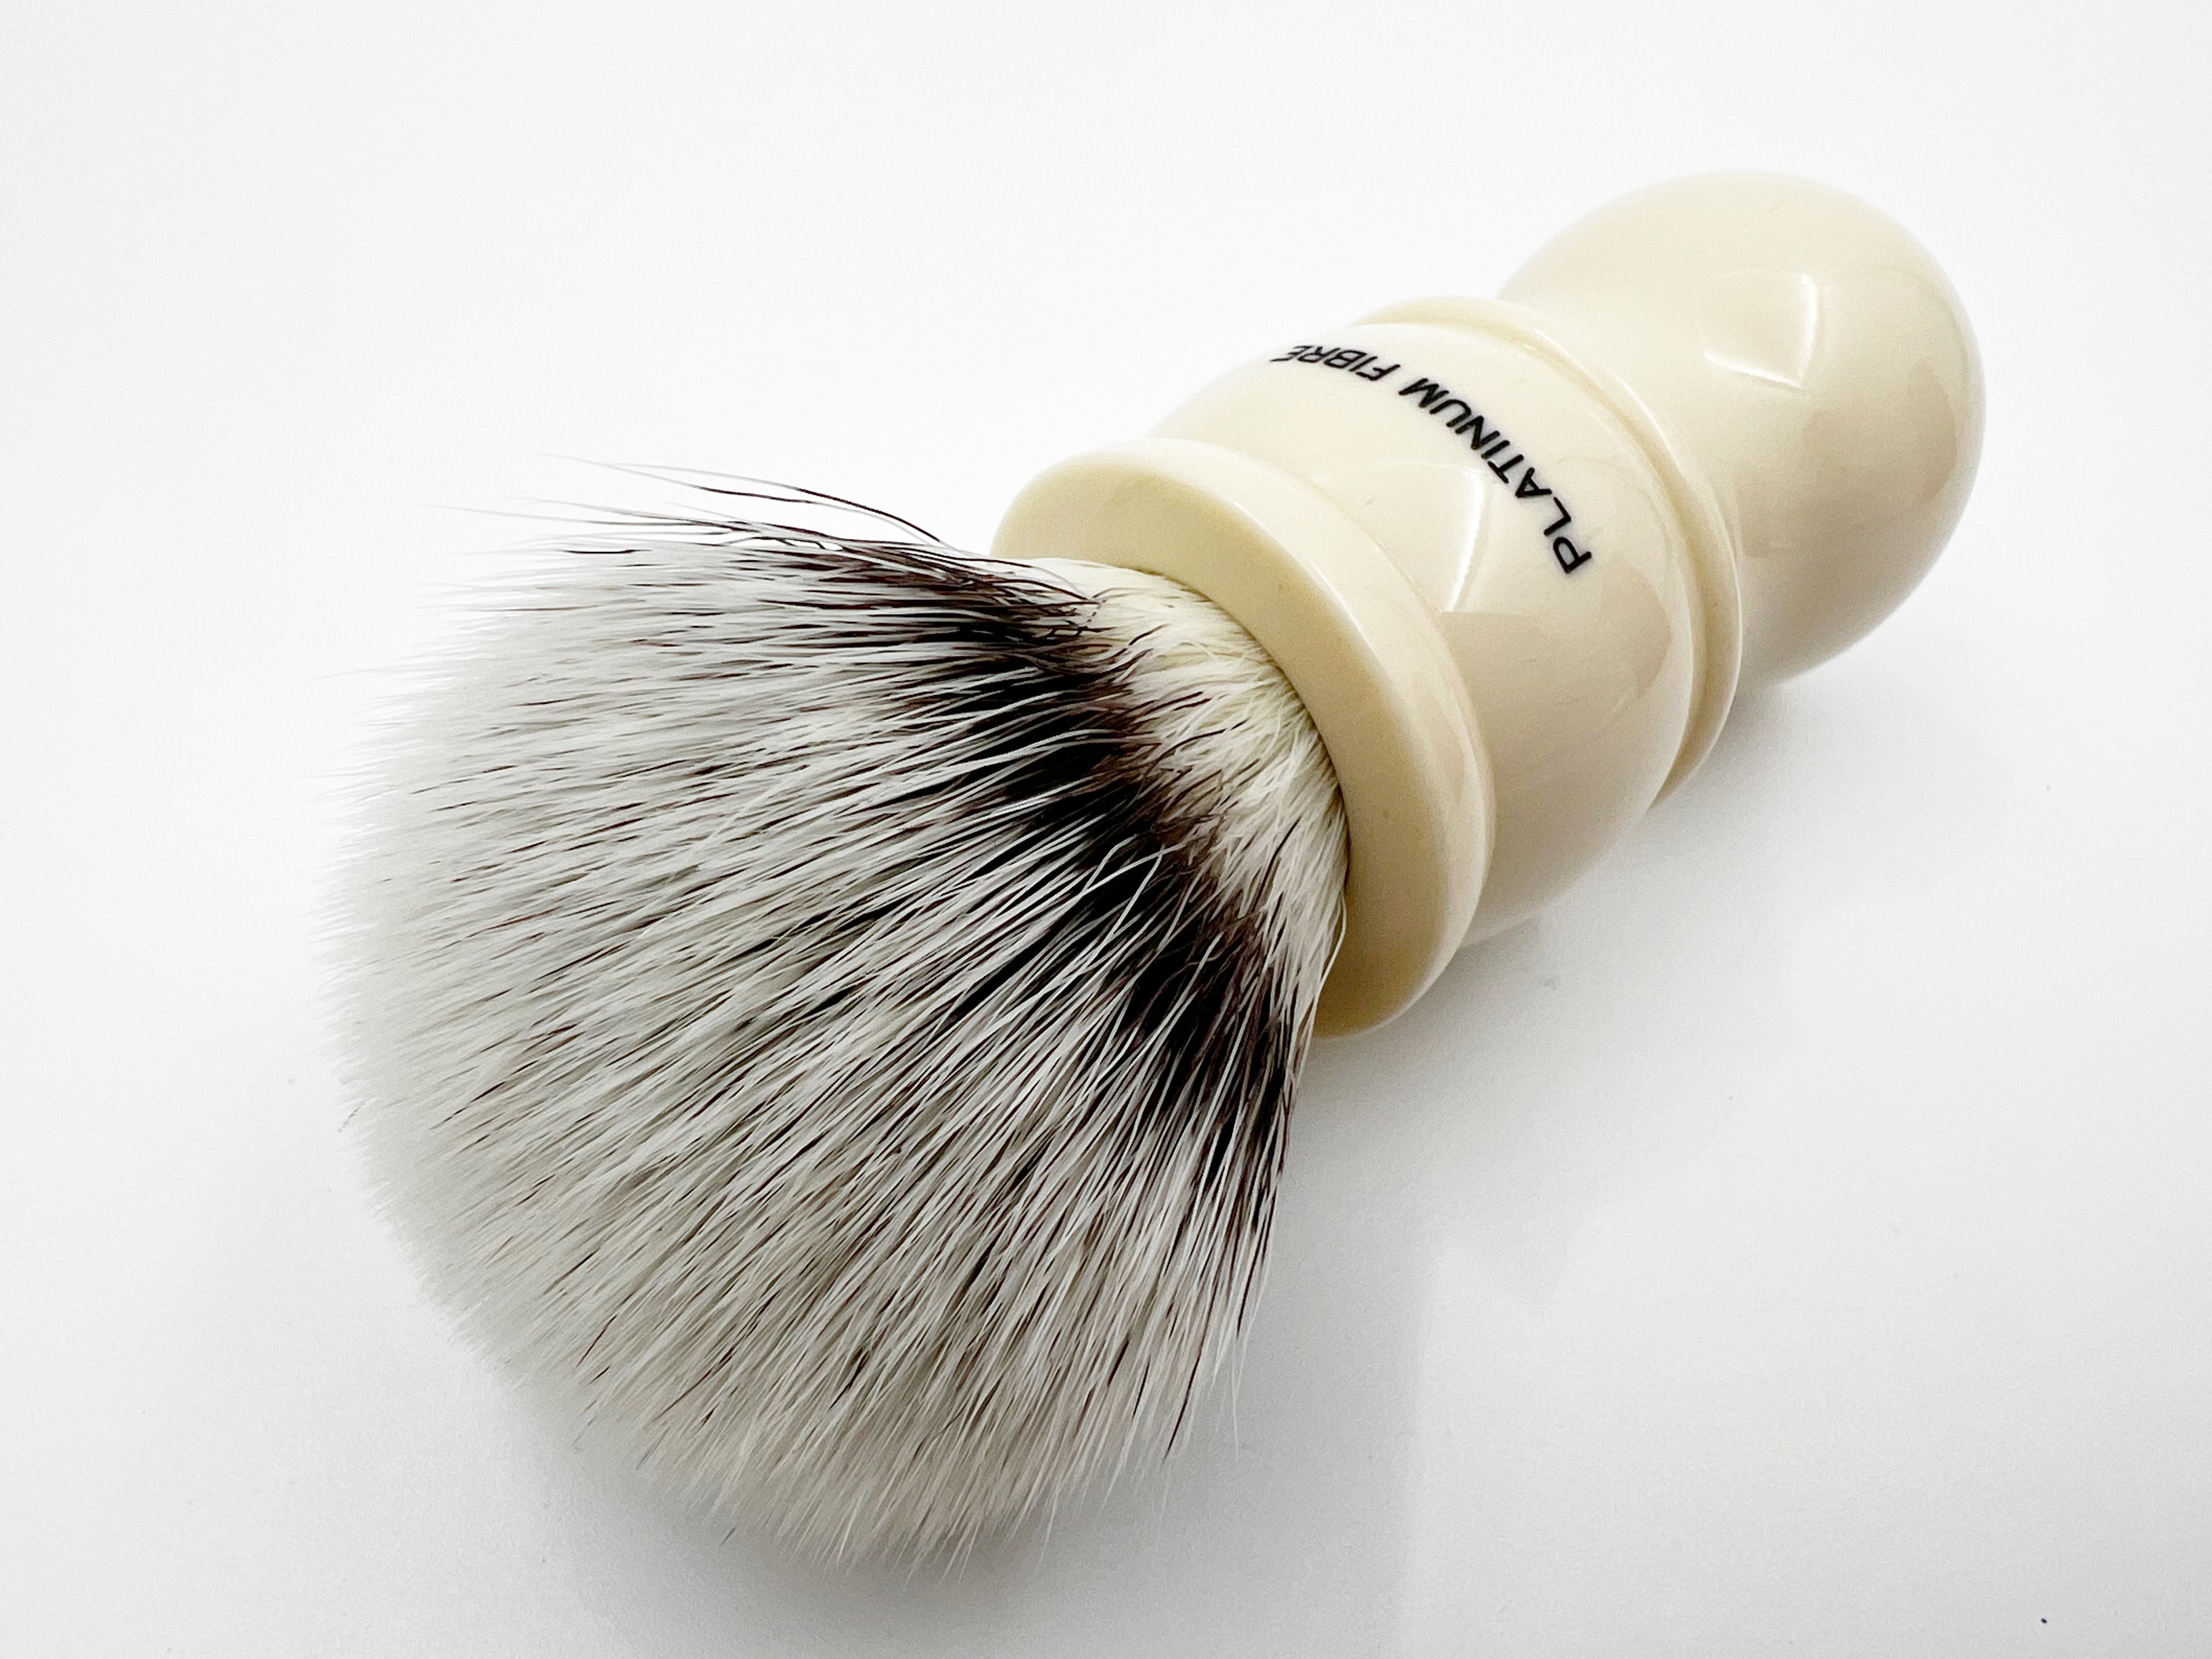 Simpson M7 Platinum Synthetic Bristle Shaving Brush